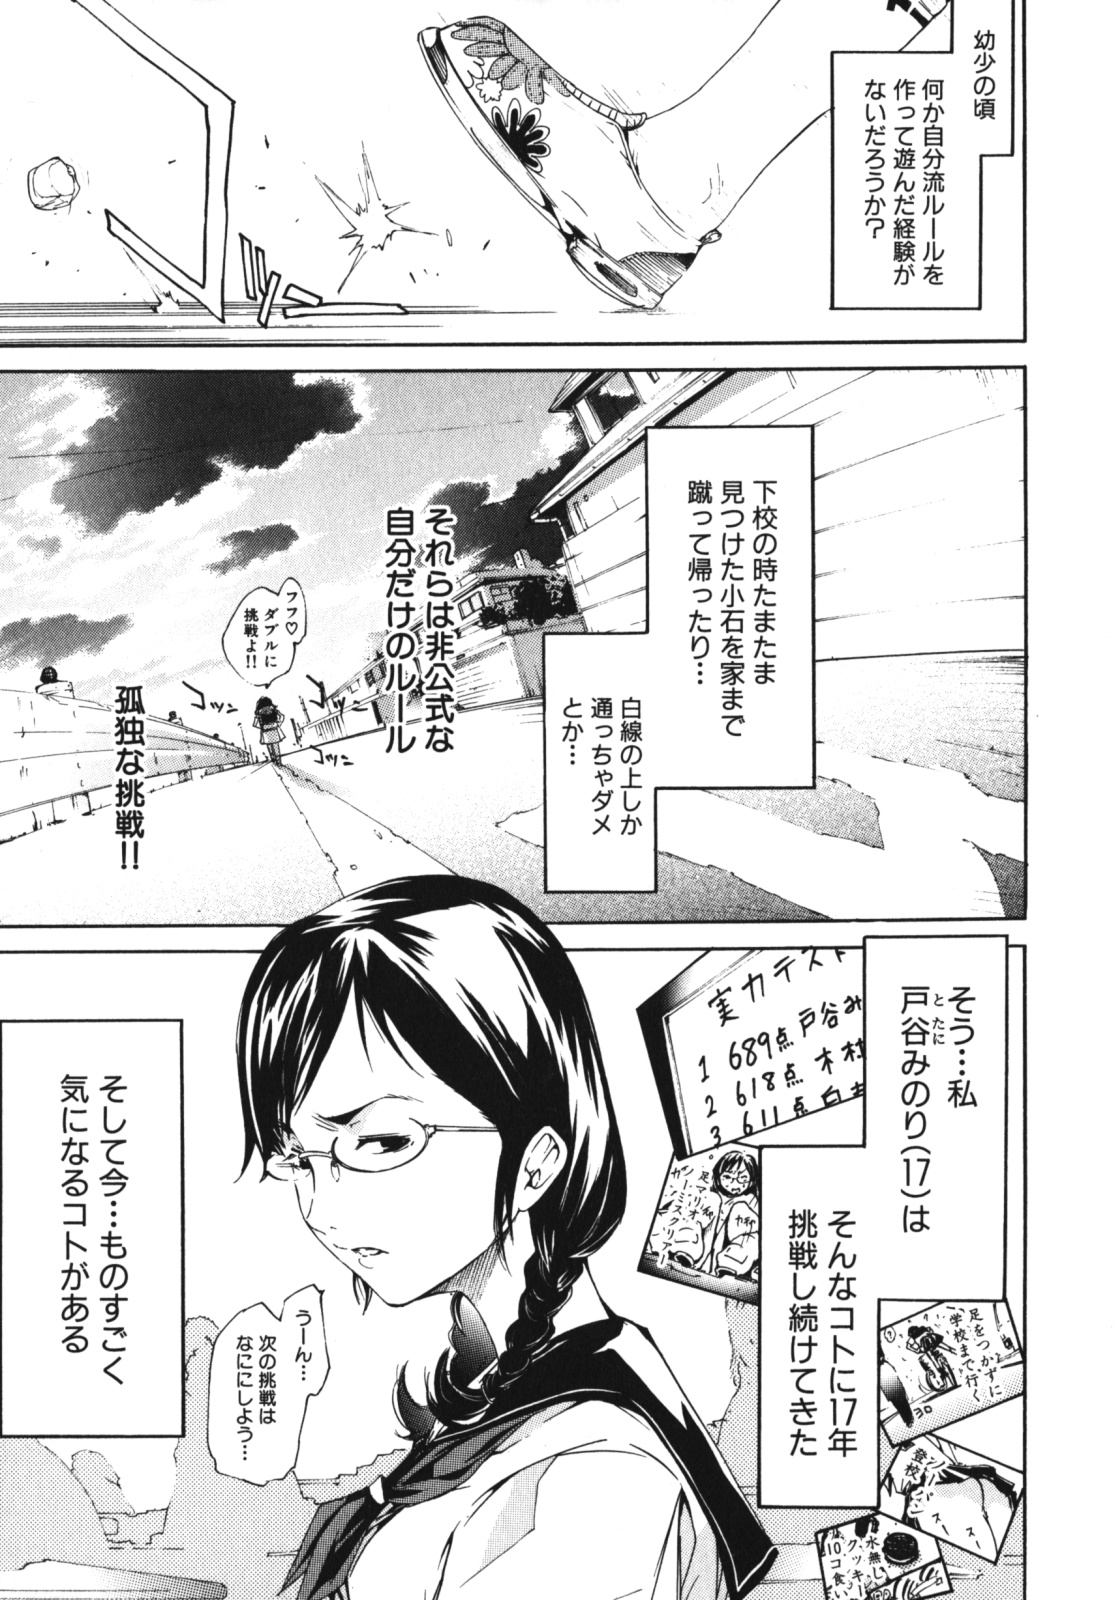 [Anthology] Geki Yaba Vol.4 - Namade Shitene page 30 full